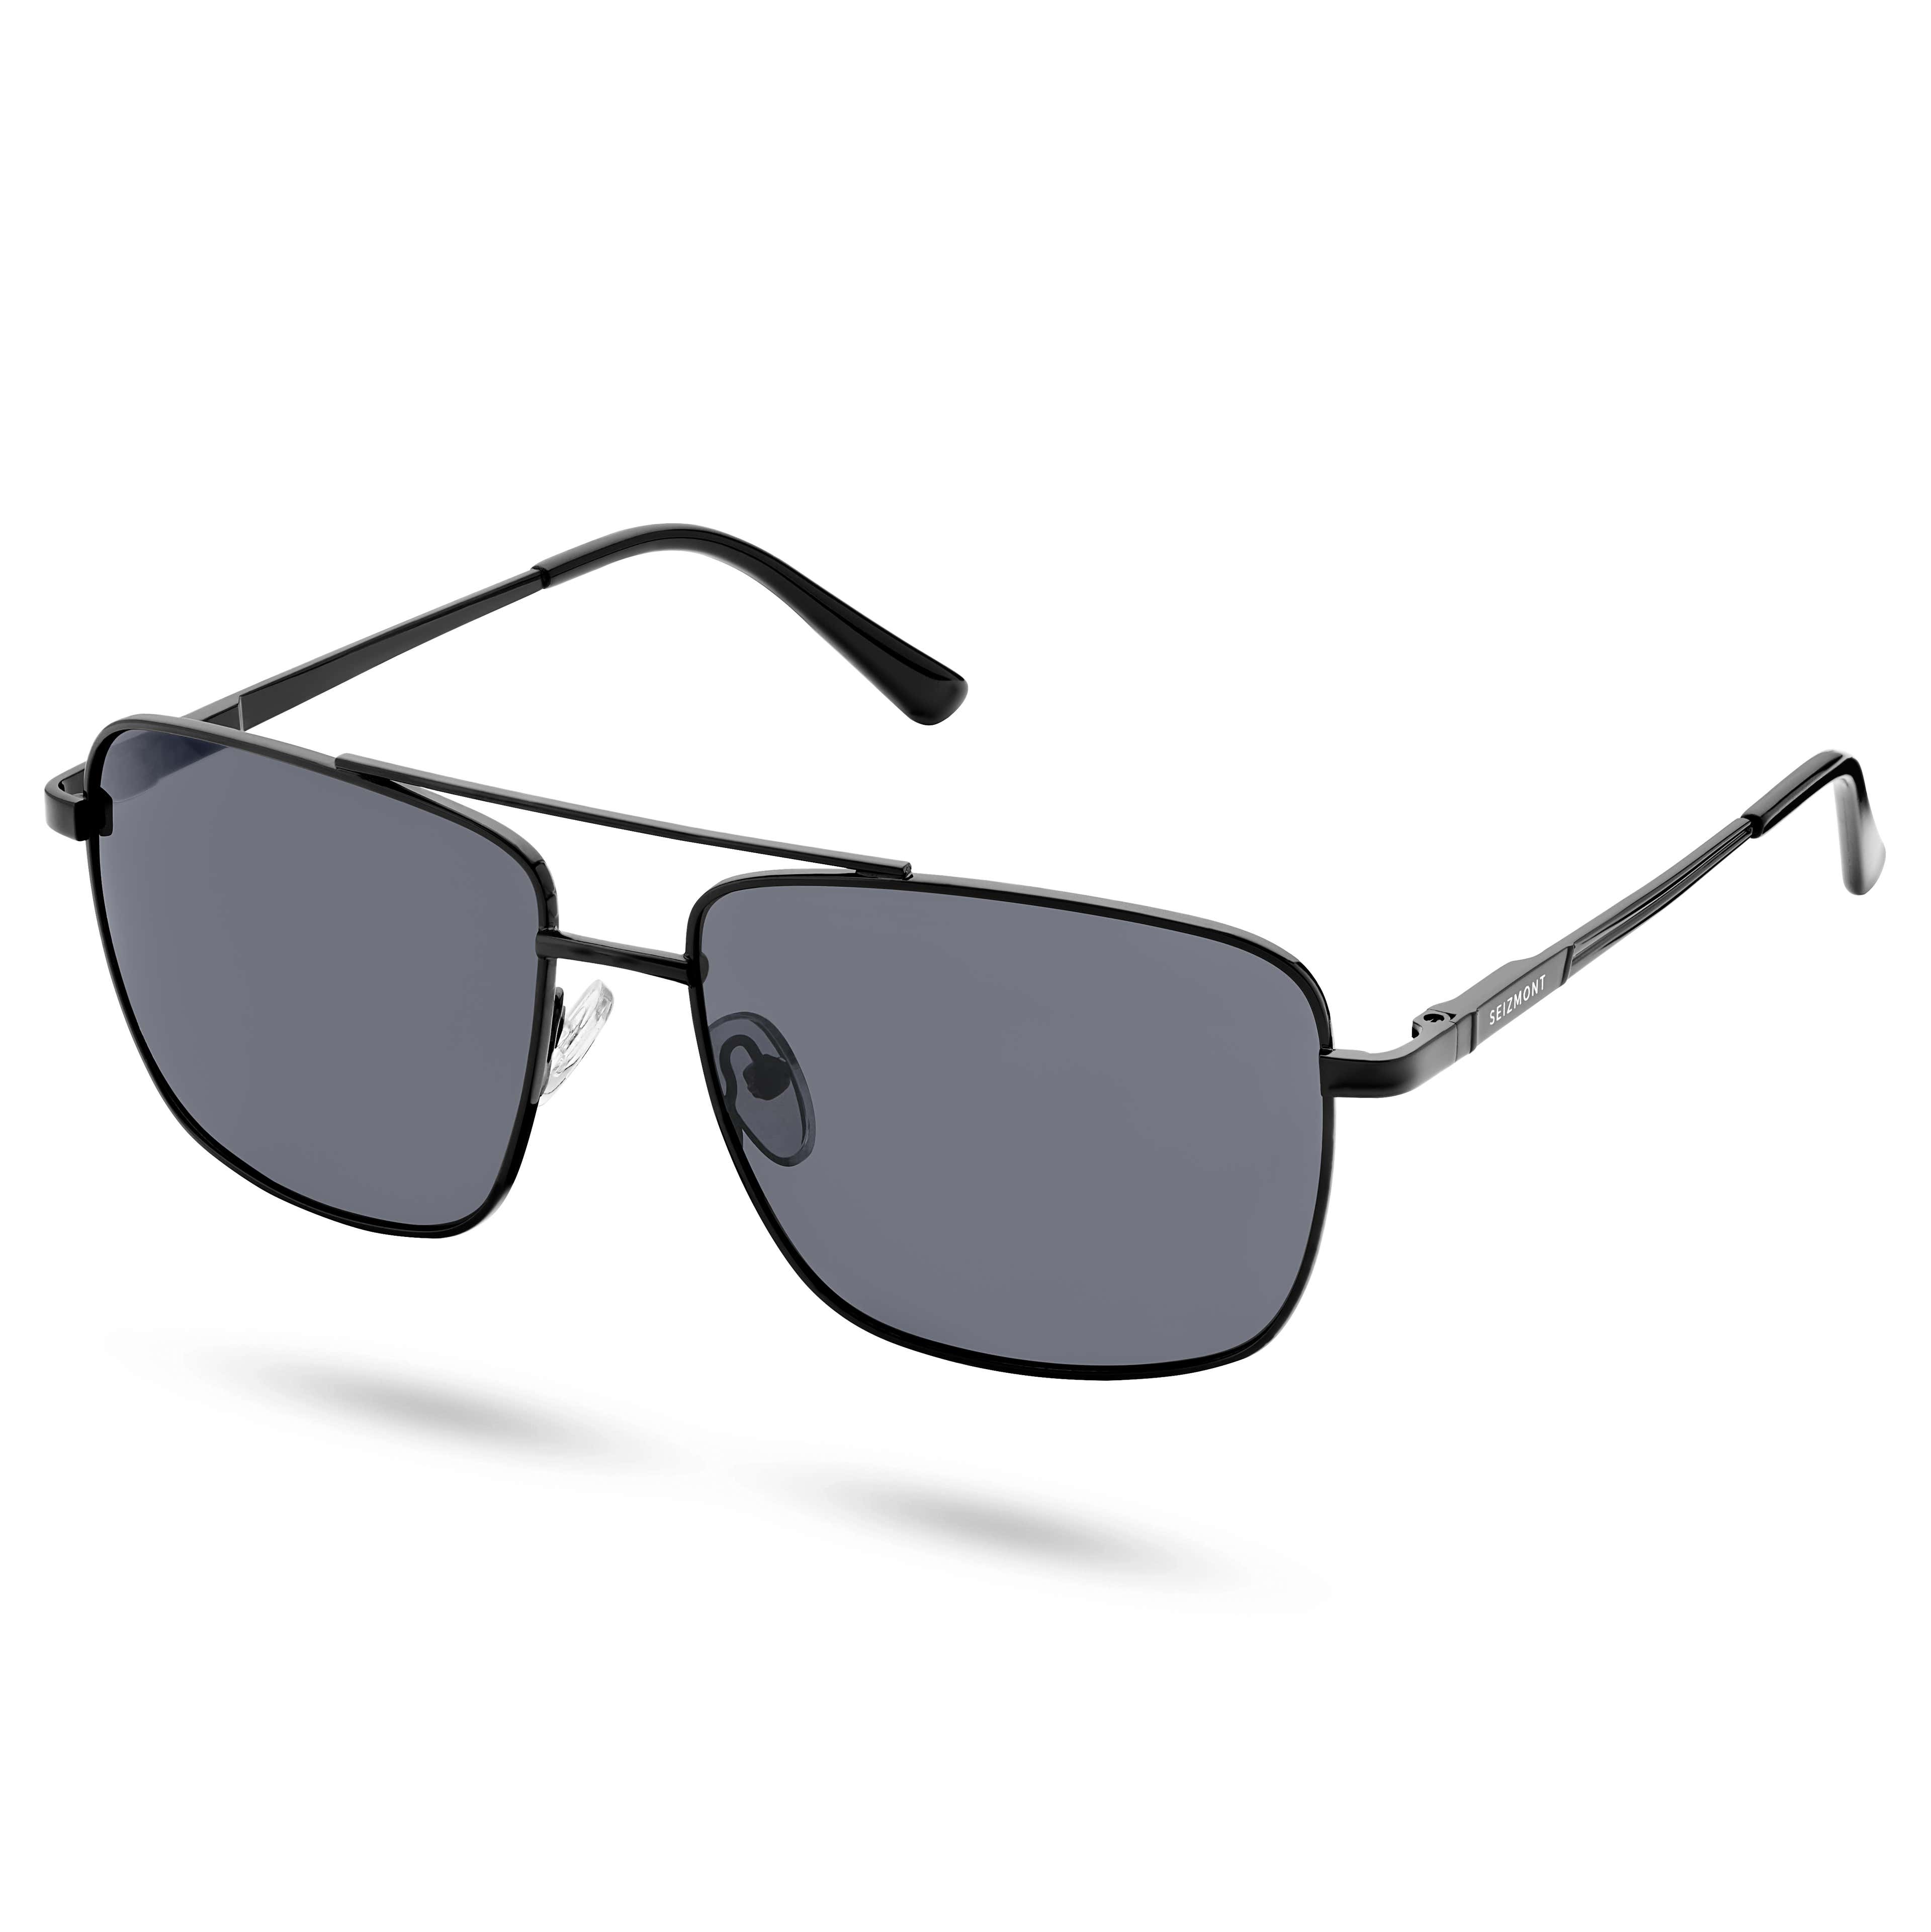 Polarised Black Square Aviator Sunglasses